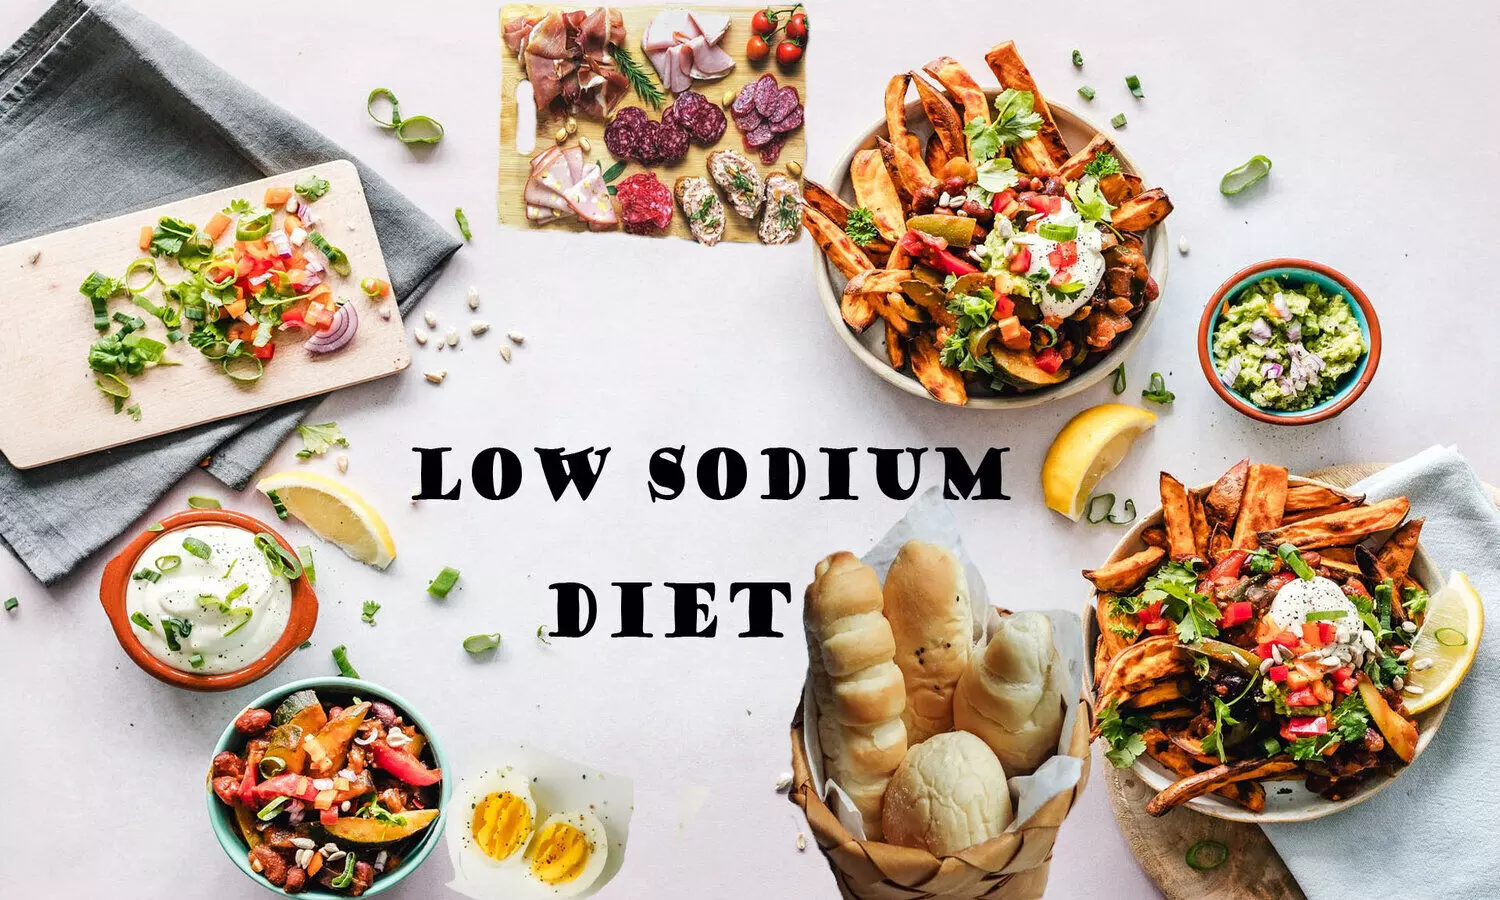 Low sodium diet